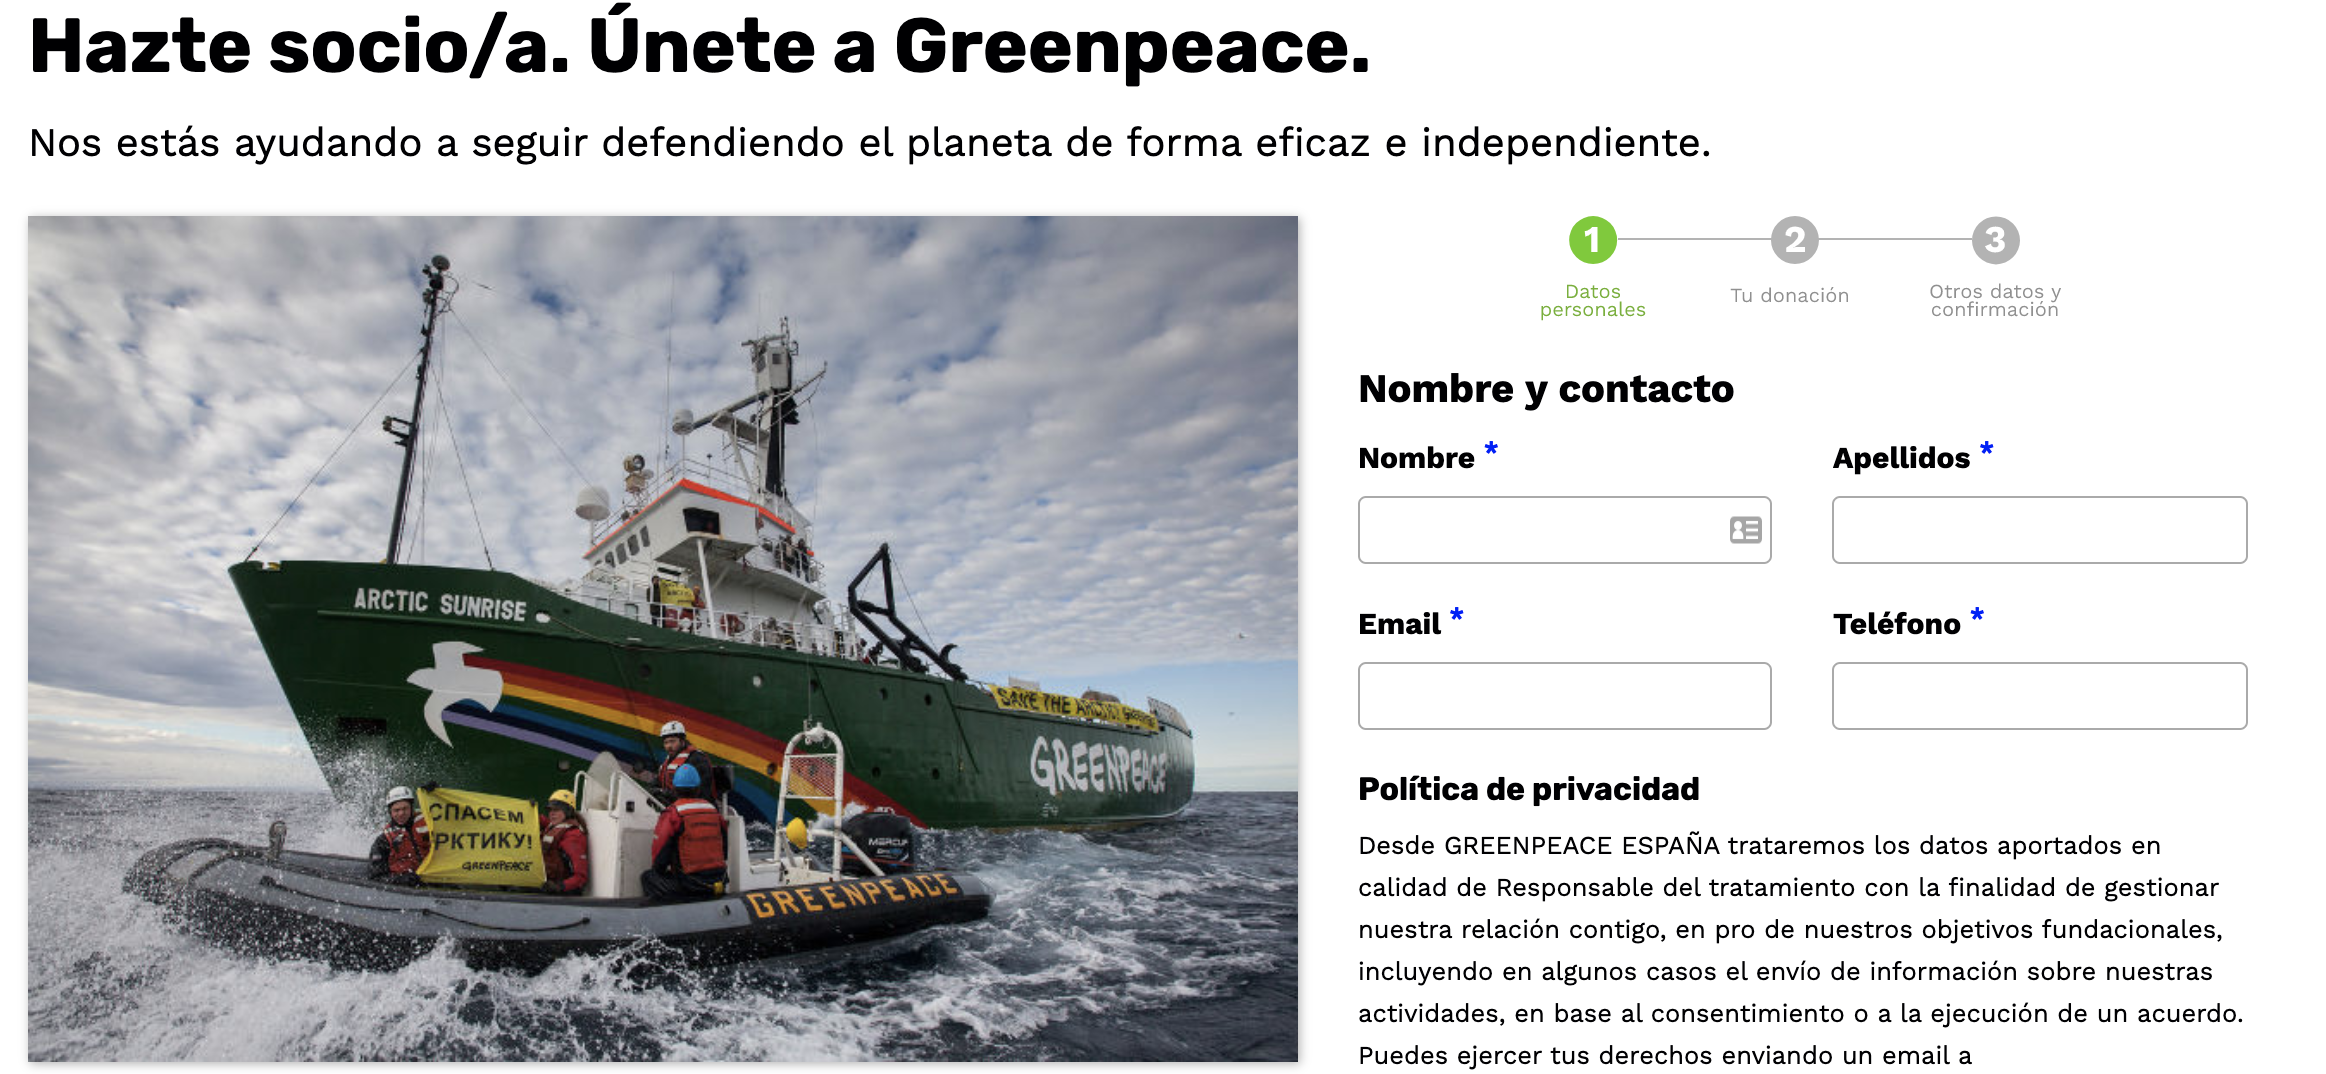 Ejemplo de conversión de Greenpeace